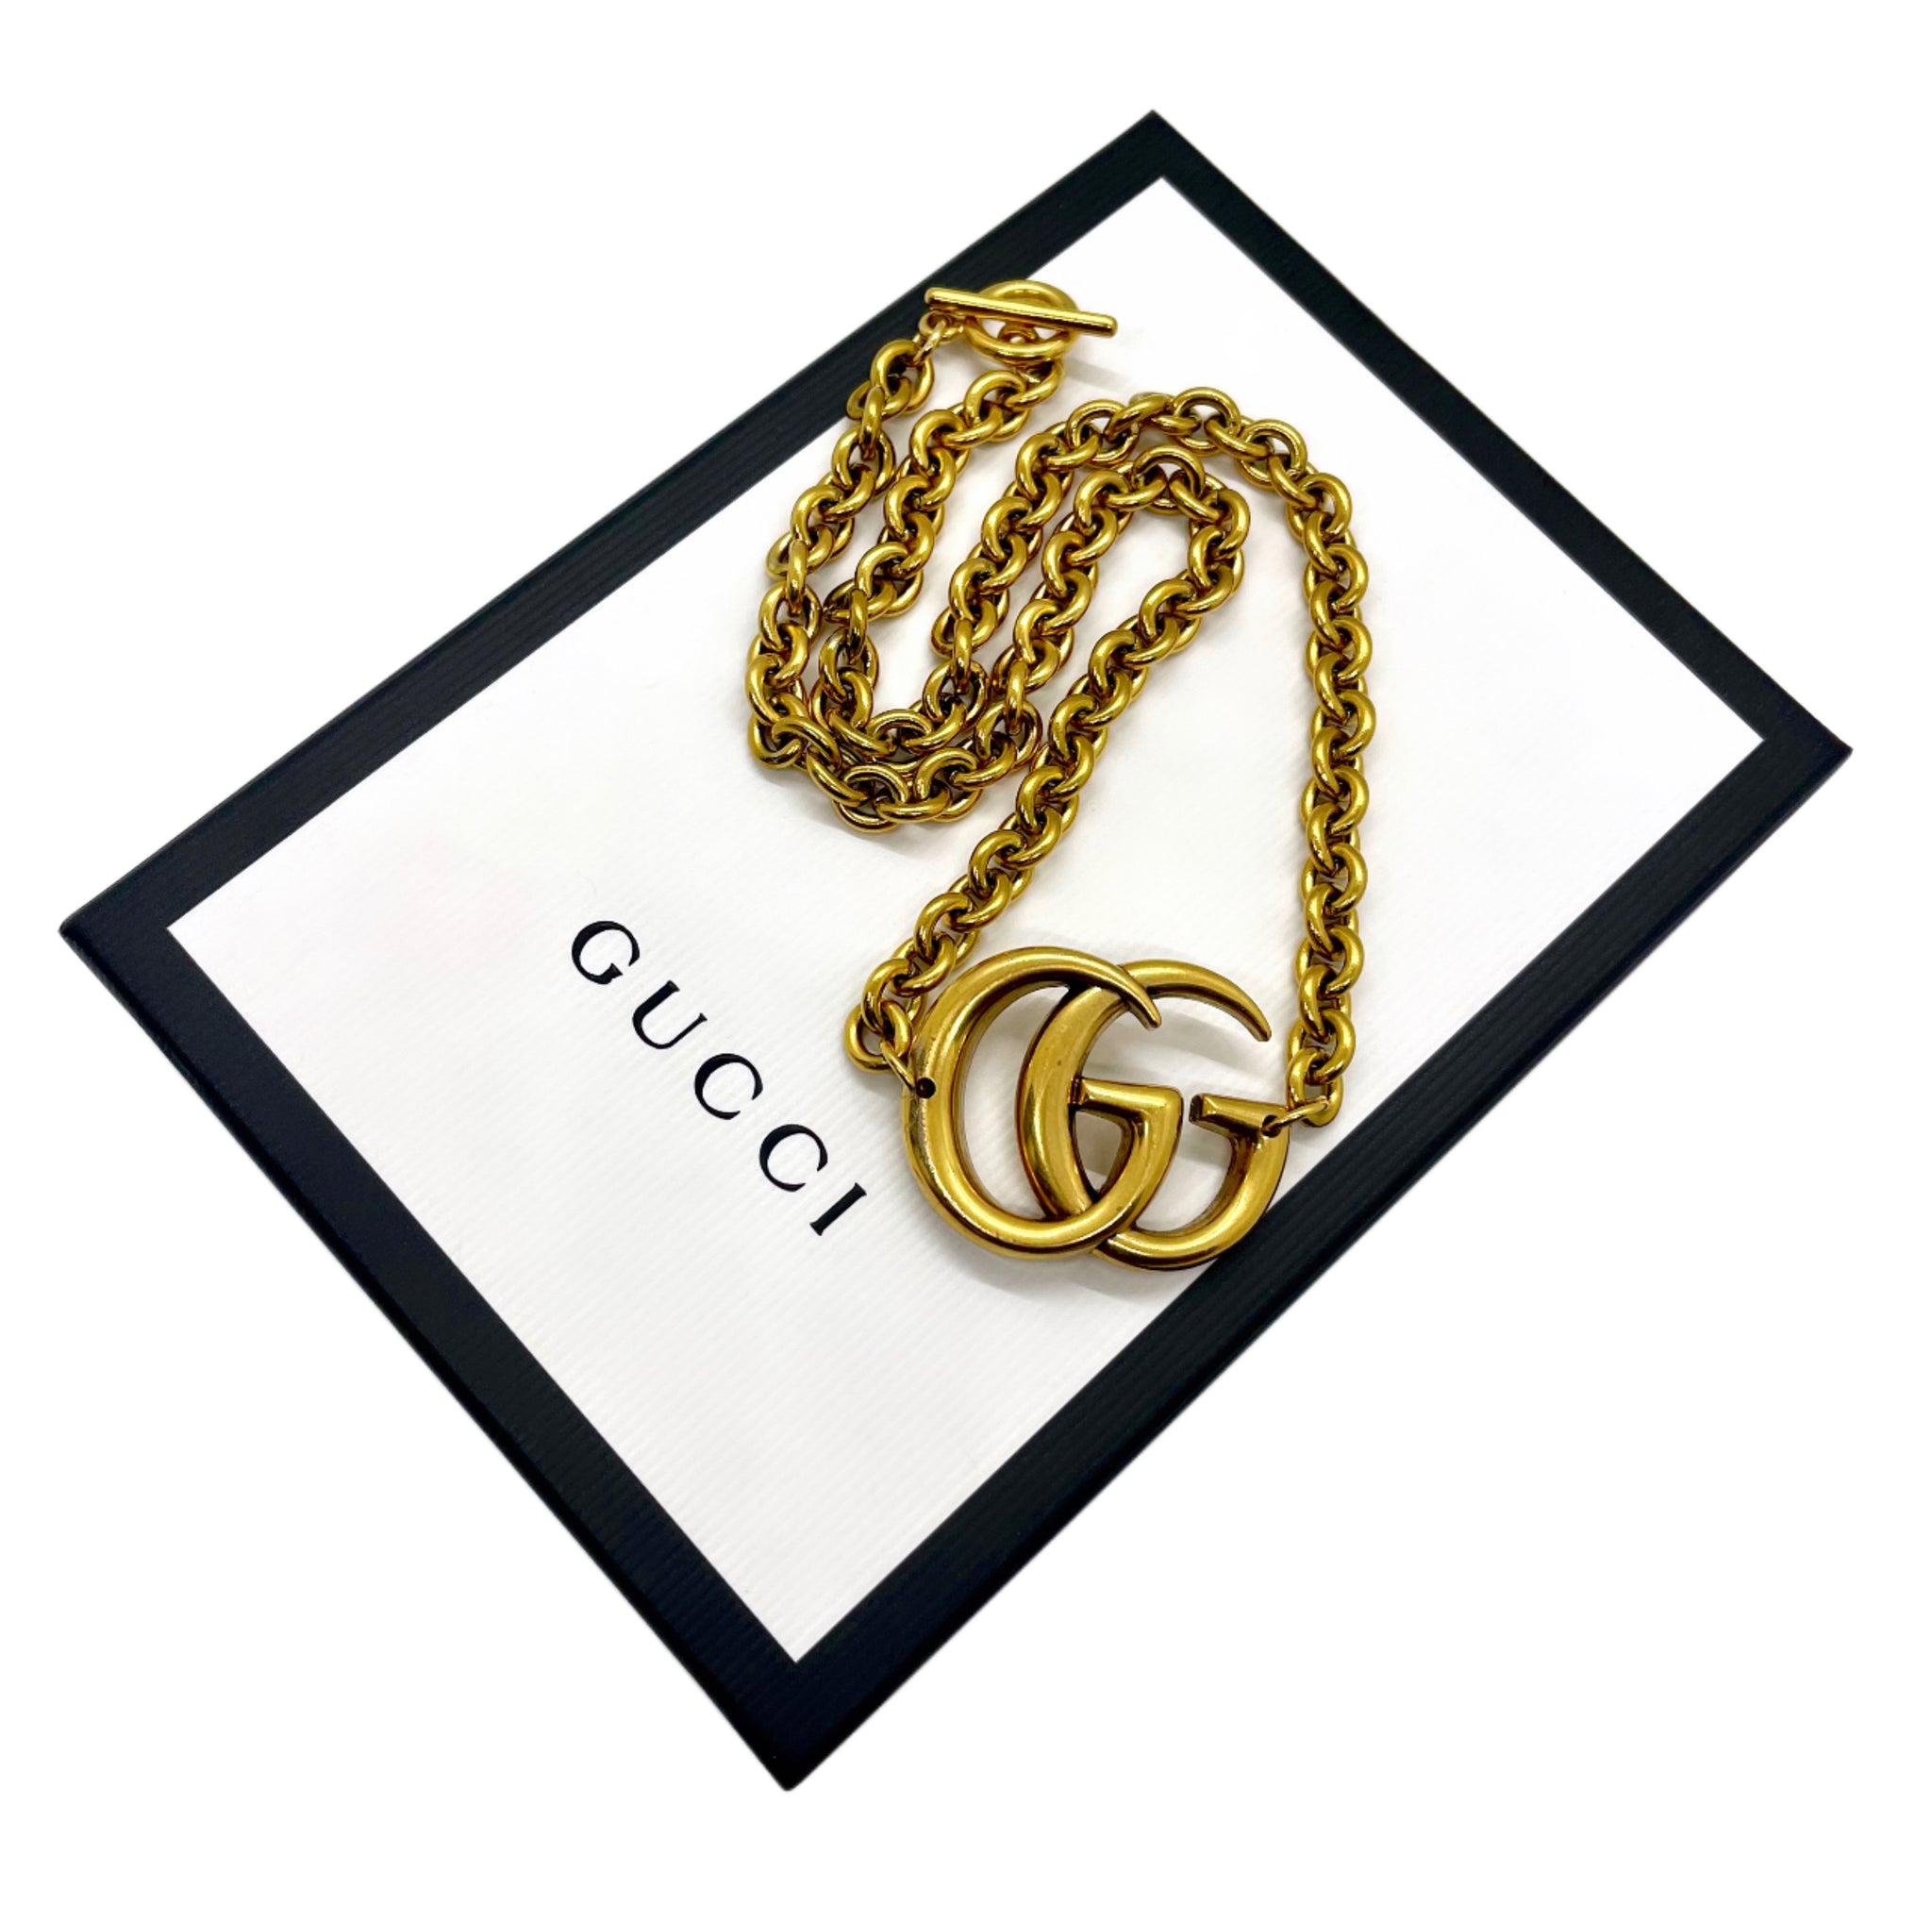 Gucci Men's Interlocking GG Pendant Necklace